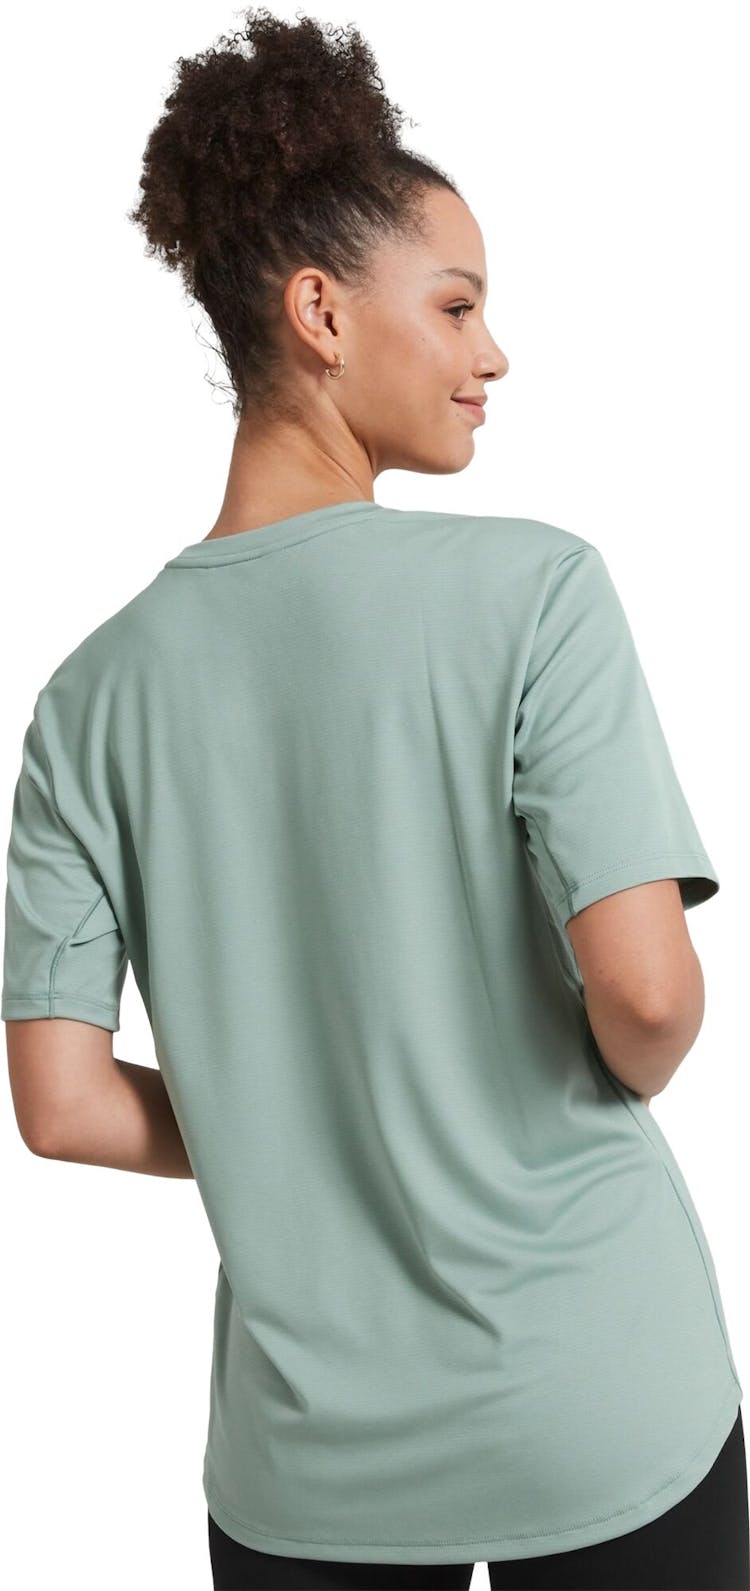 Numéro de l'image de la galerie de produits 3 pour le produit T-shirt à manches courtes SUN-Stopper - Femme